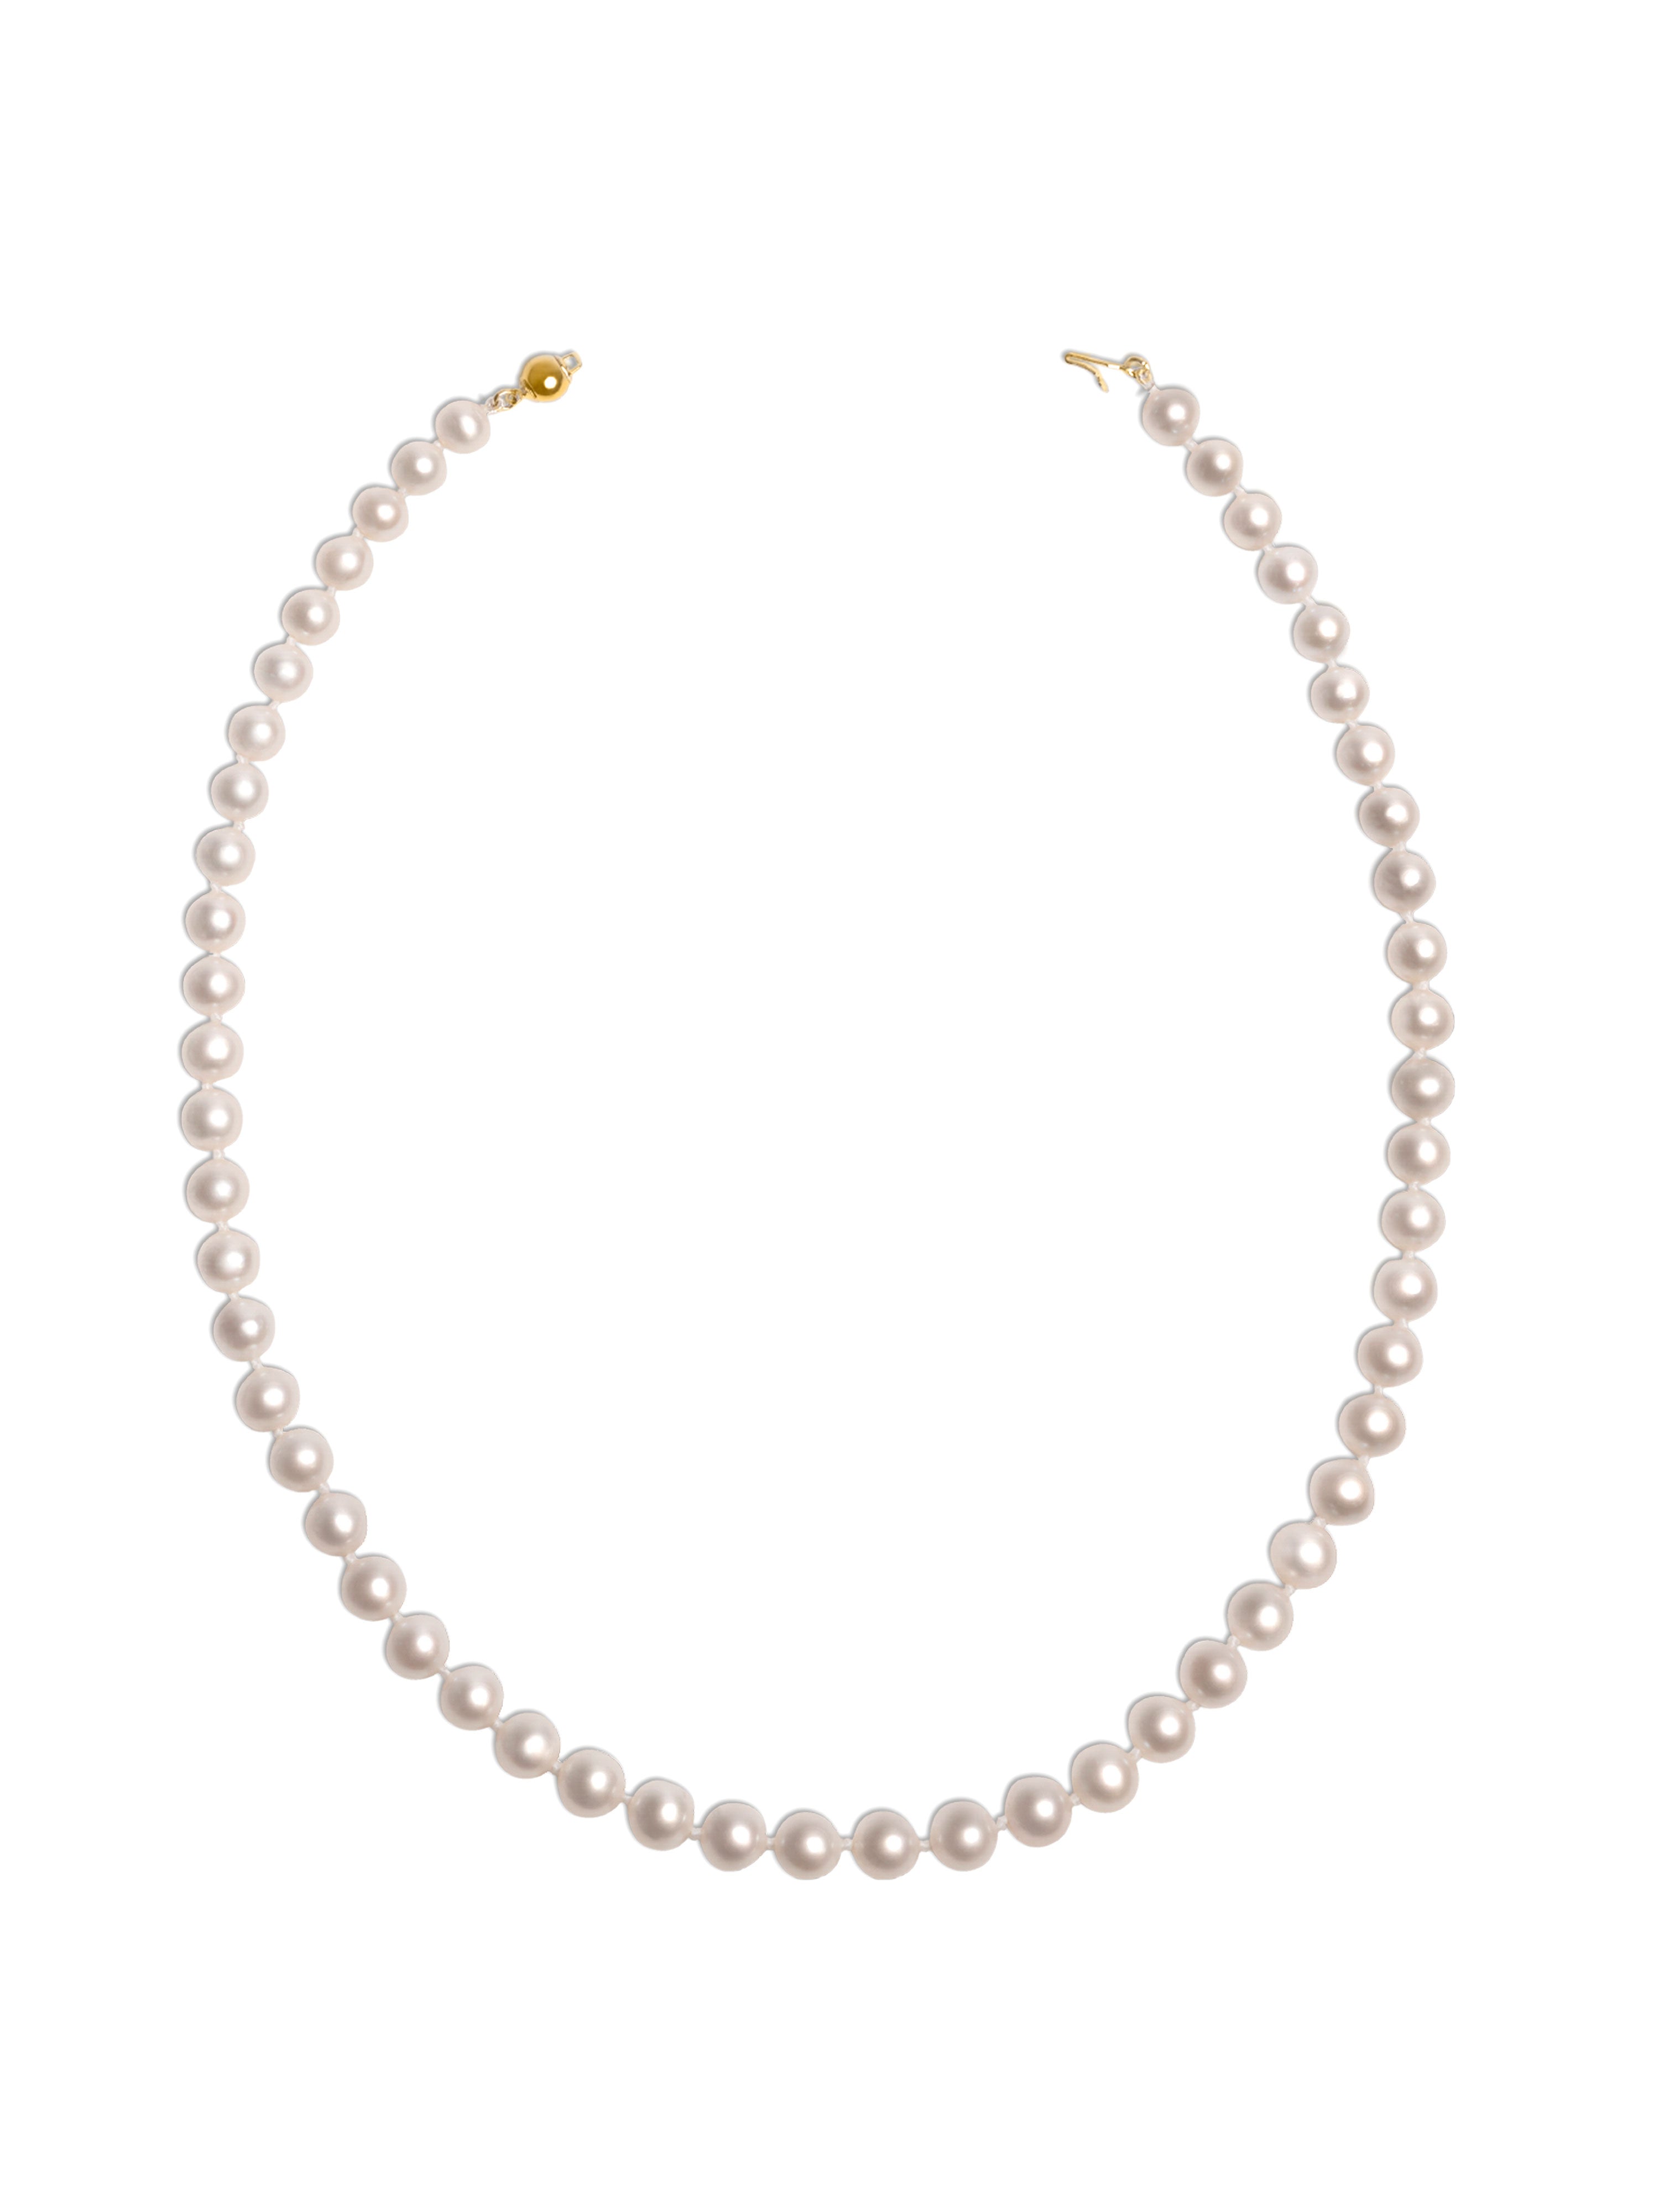 Collar de Perlas Cultivadas de Agua Dulce AA+ de 6,5-7,5 mm, 90 cm de largo | Oro 18K